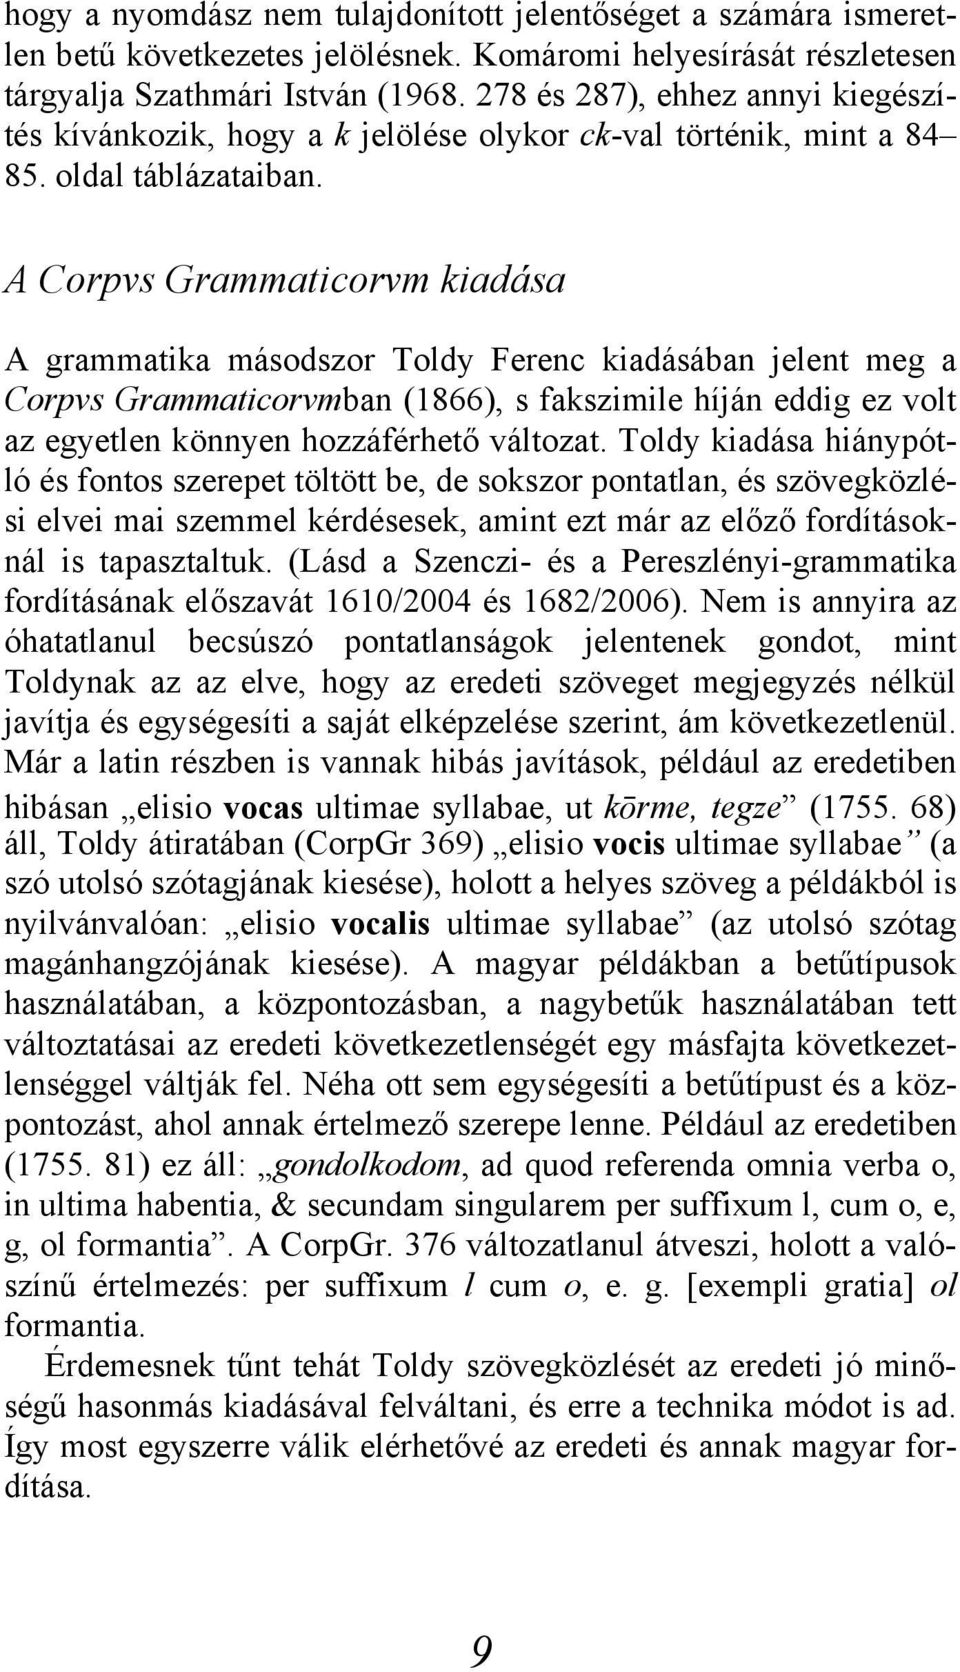 A Corpvs Grammaticorvm kiadása A grammatika másodszor Toldy Ferenc kiadásában jelent meg a Corpvs Grammaticorvmban (1866), s fakszimile híján eddig ez volt az egyetlen könnyen hozzáférhető változat.